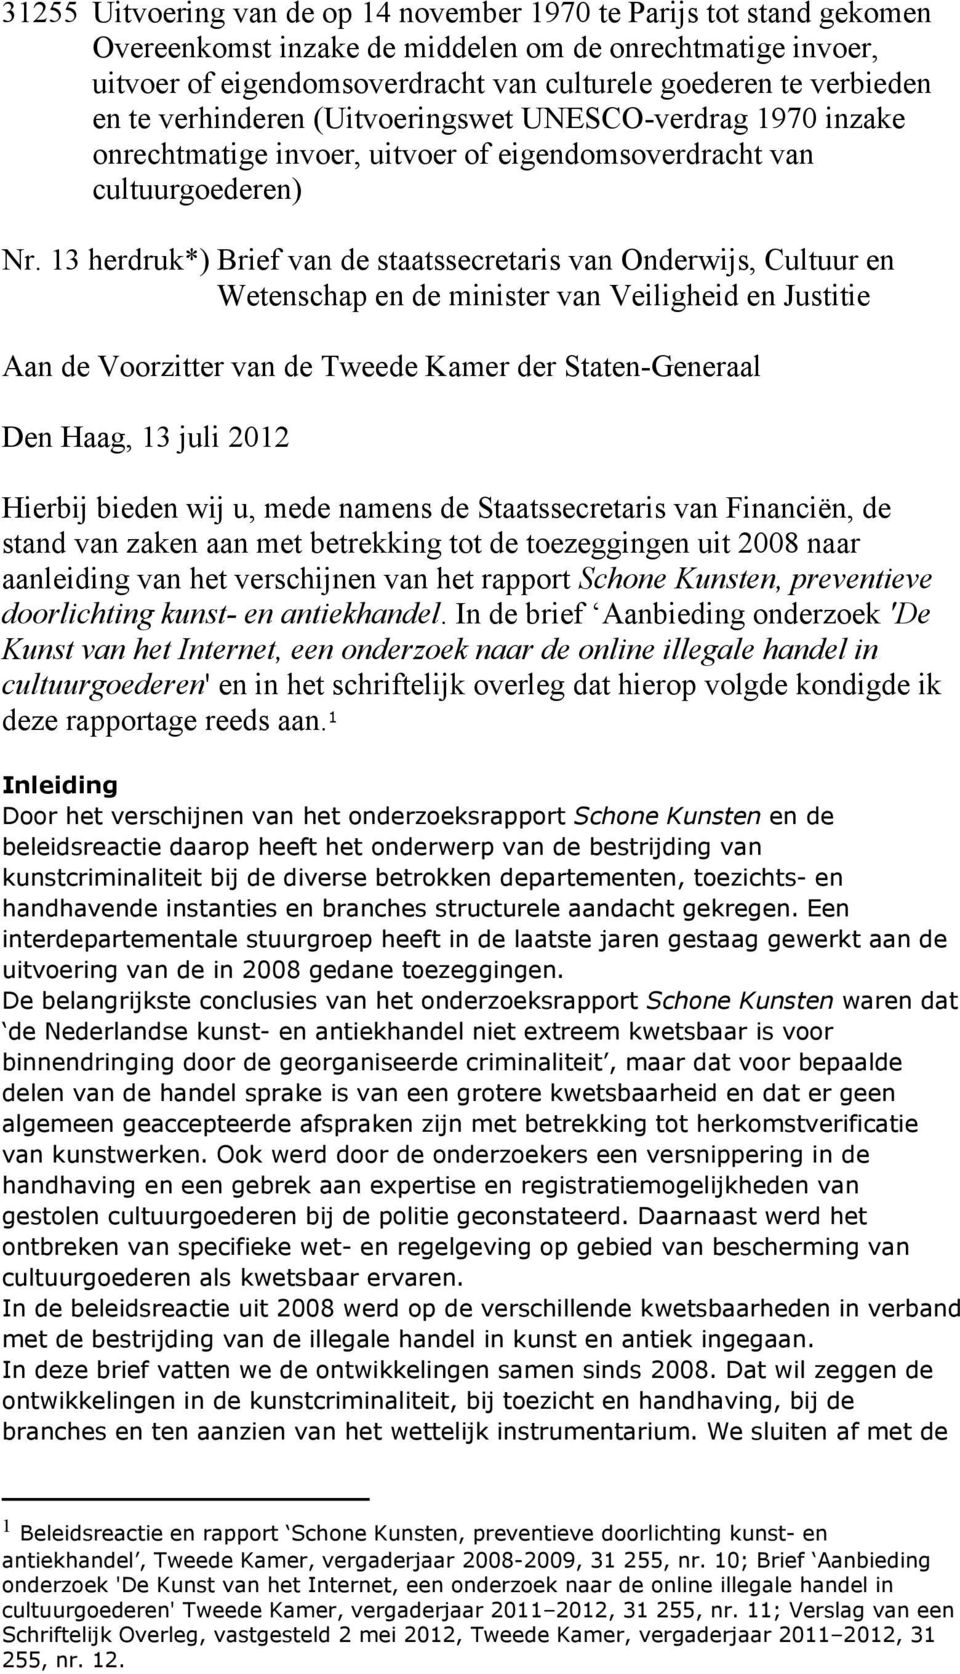 13 herdruk*) Brief van de staatssecretaris van Onderwijs, Cultuur en Wetenschap en de minister van Veiligheid en Justitie Aan de Voorzitter van de Tweede Kamer der Staten-Generaal Den Haag, 13 juli